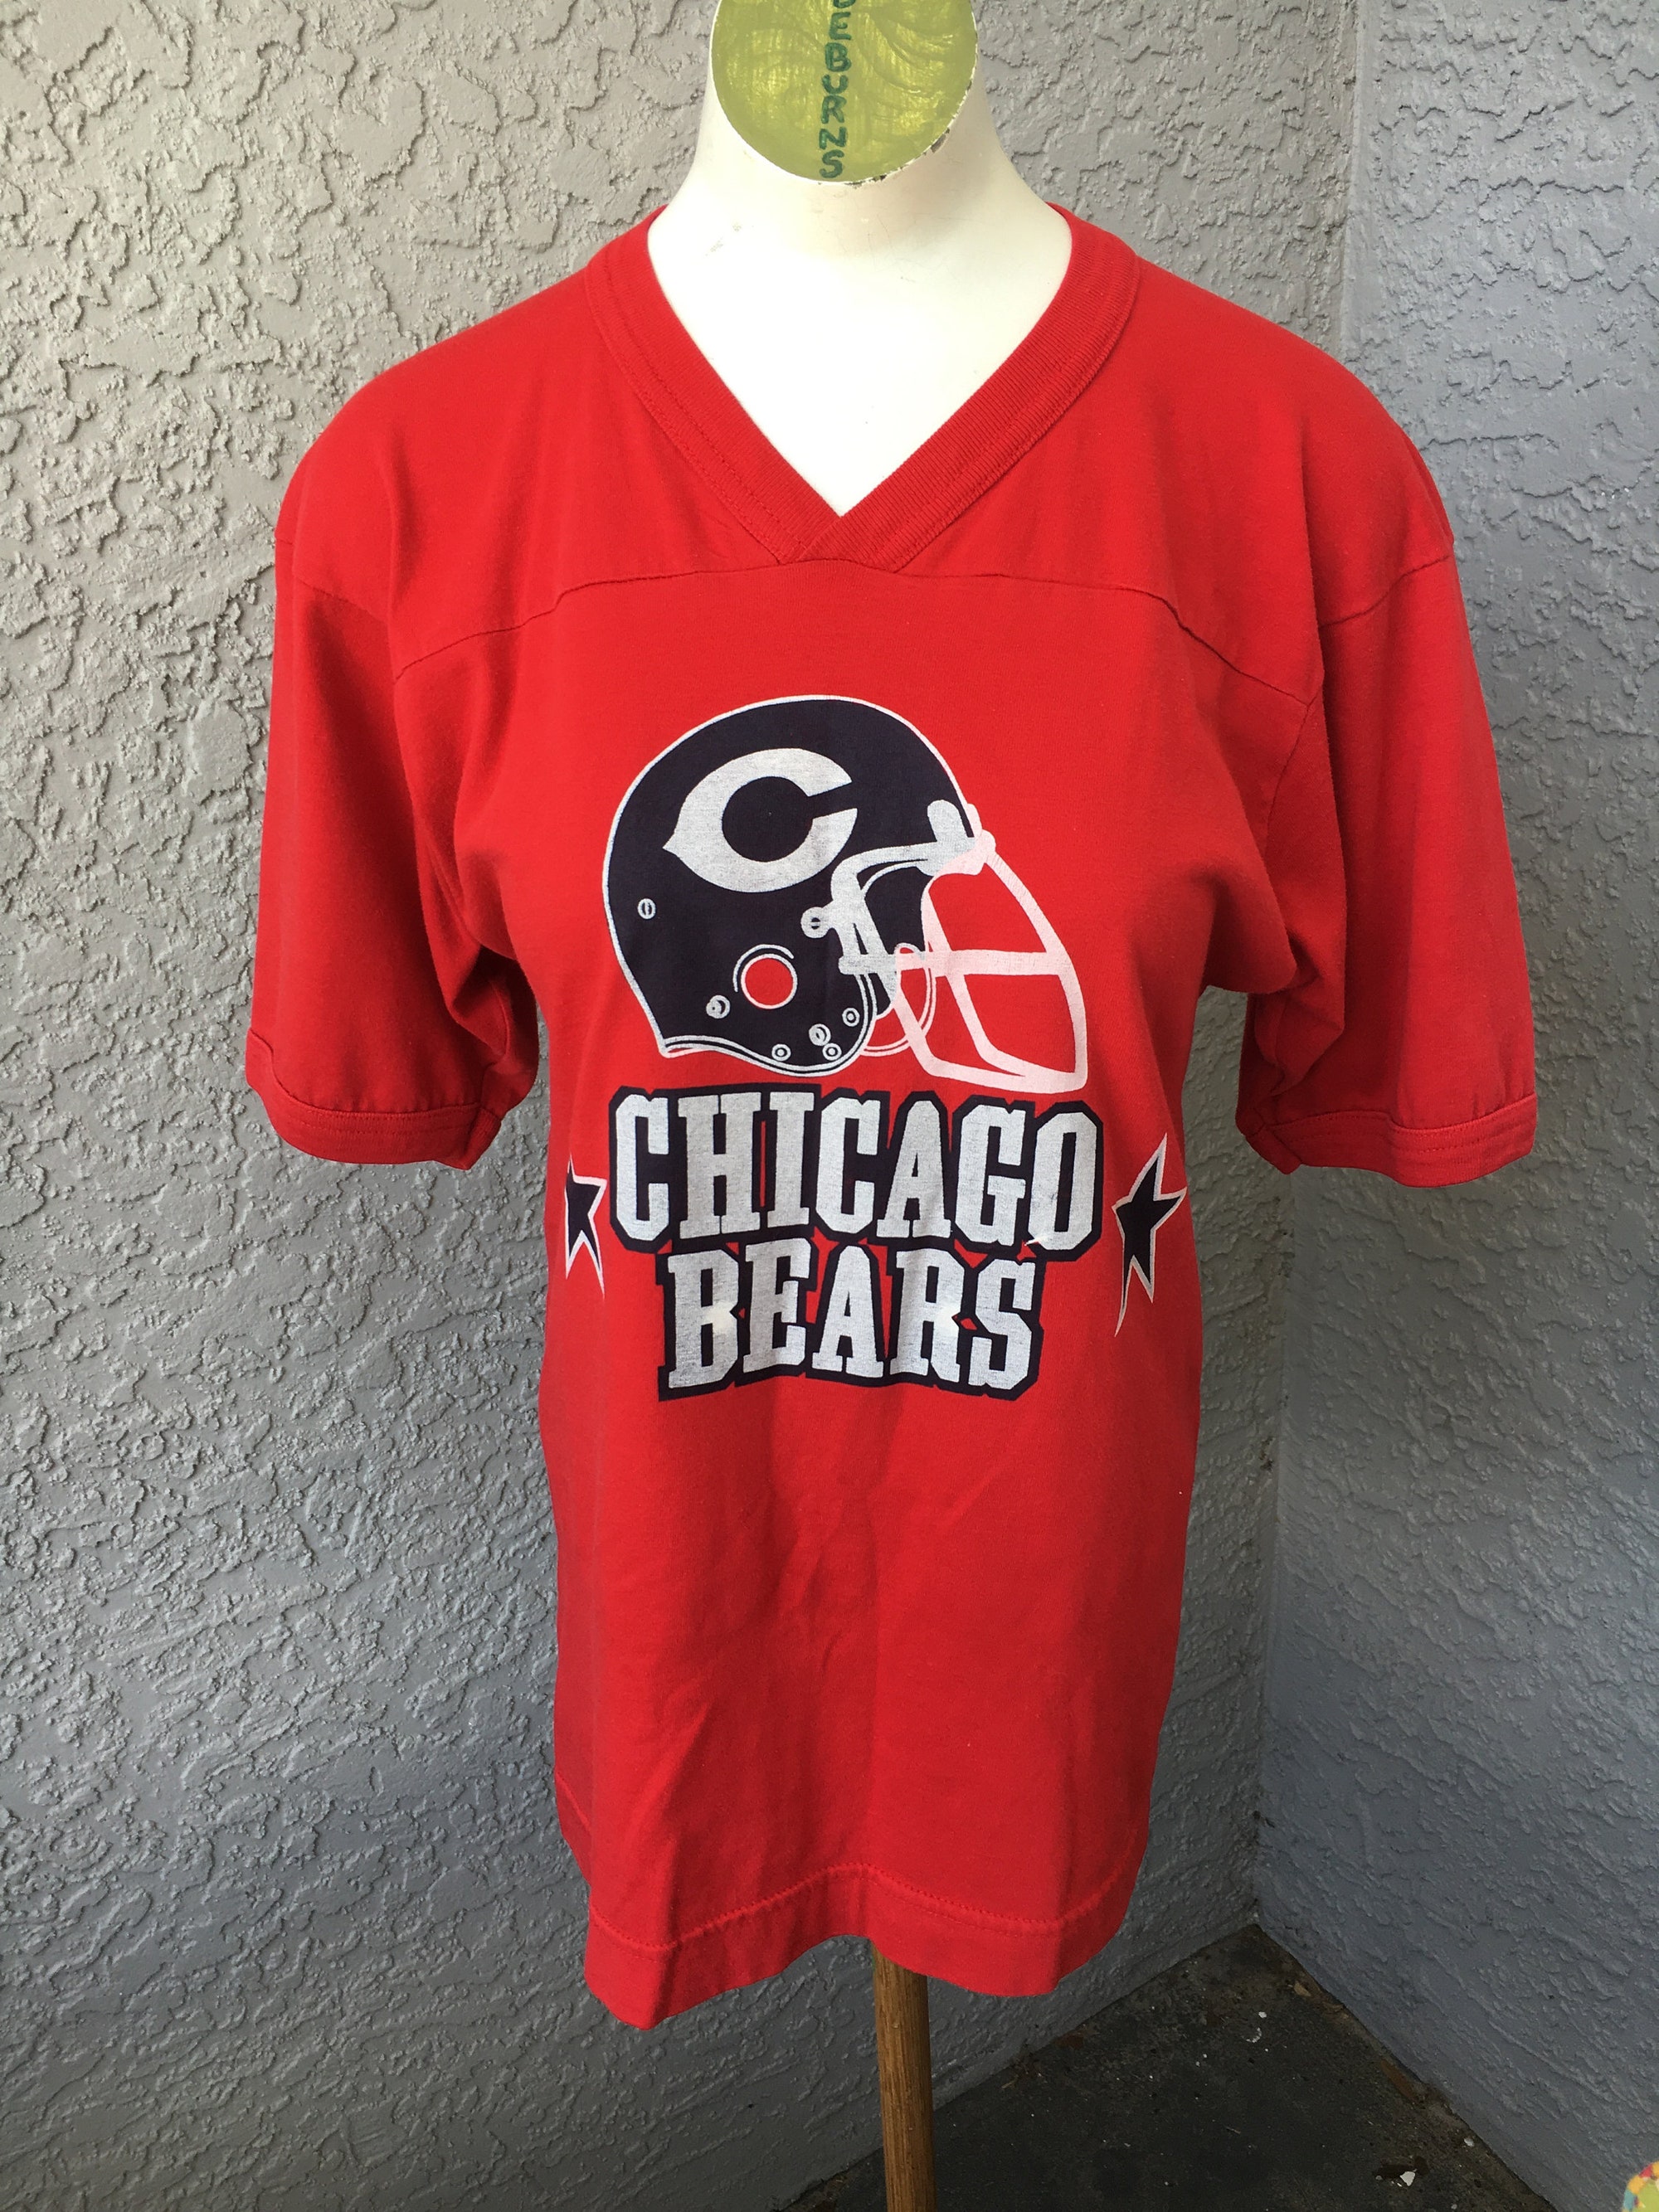 Chicago Bears 1980s vintage vneck t-shirt